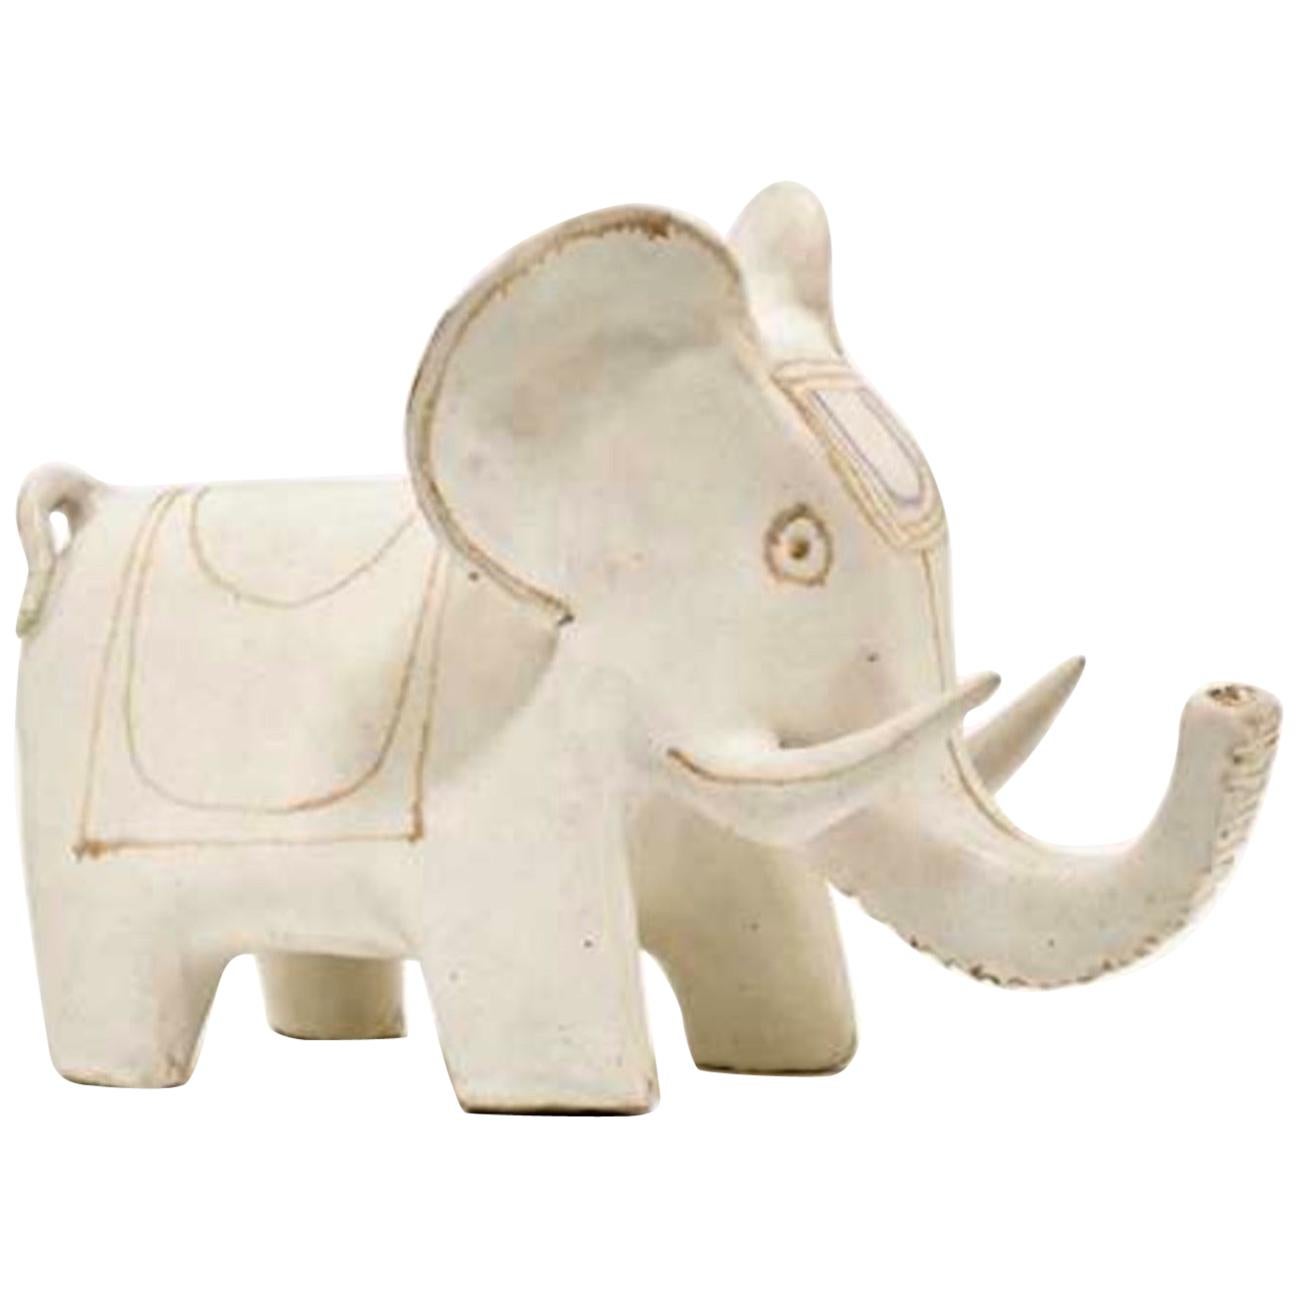 Bruno Gambone Ceramic "Elephant" Sculpture, 1990s